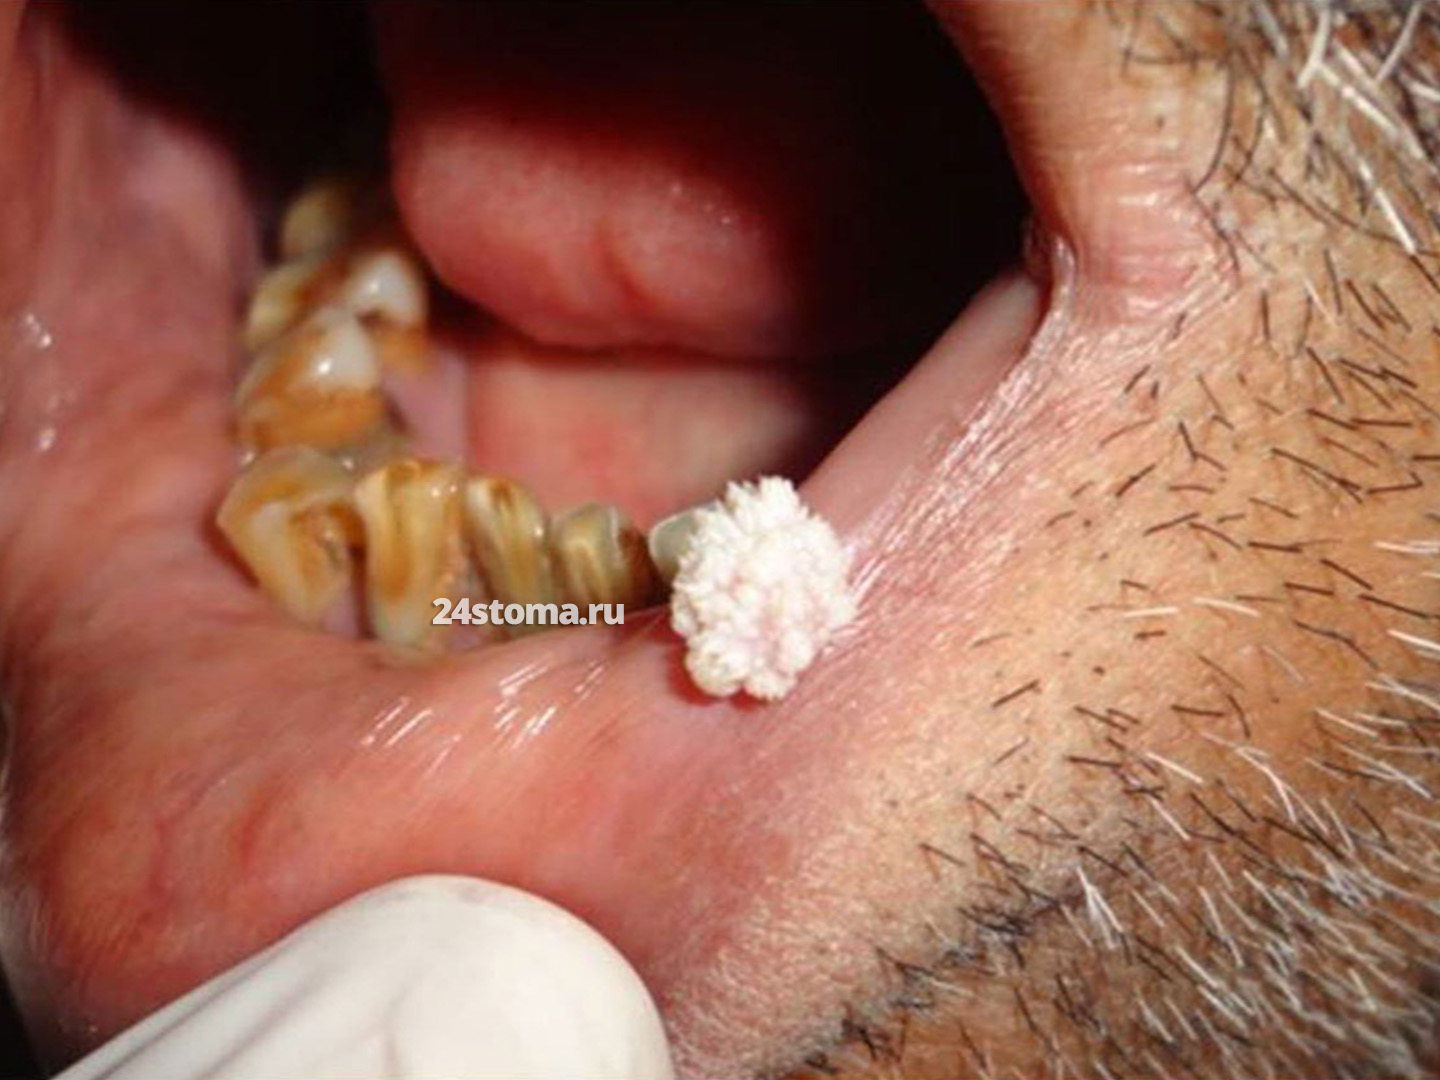 Плоскоклеточная папиллома на нижней губе.